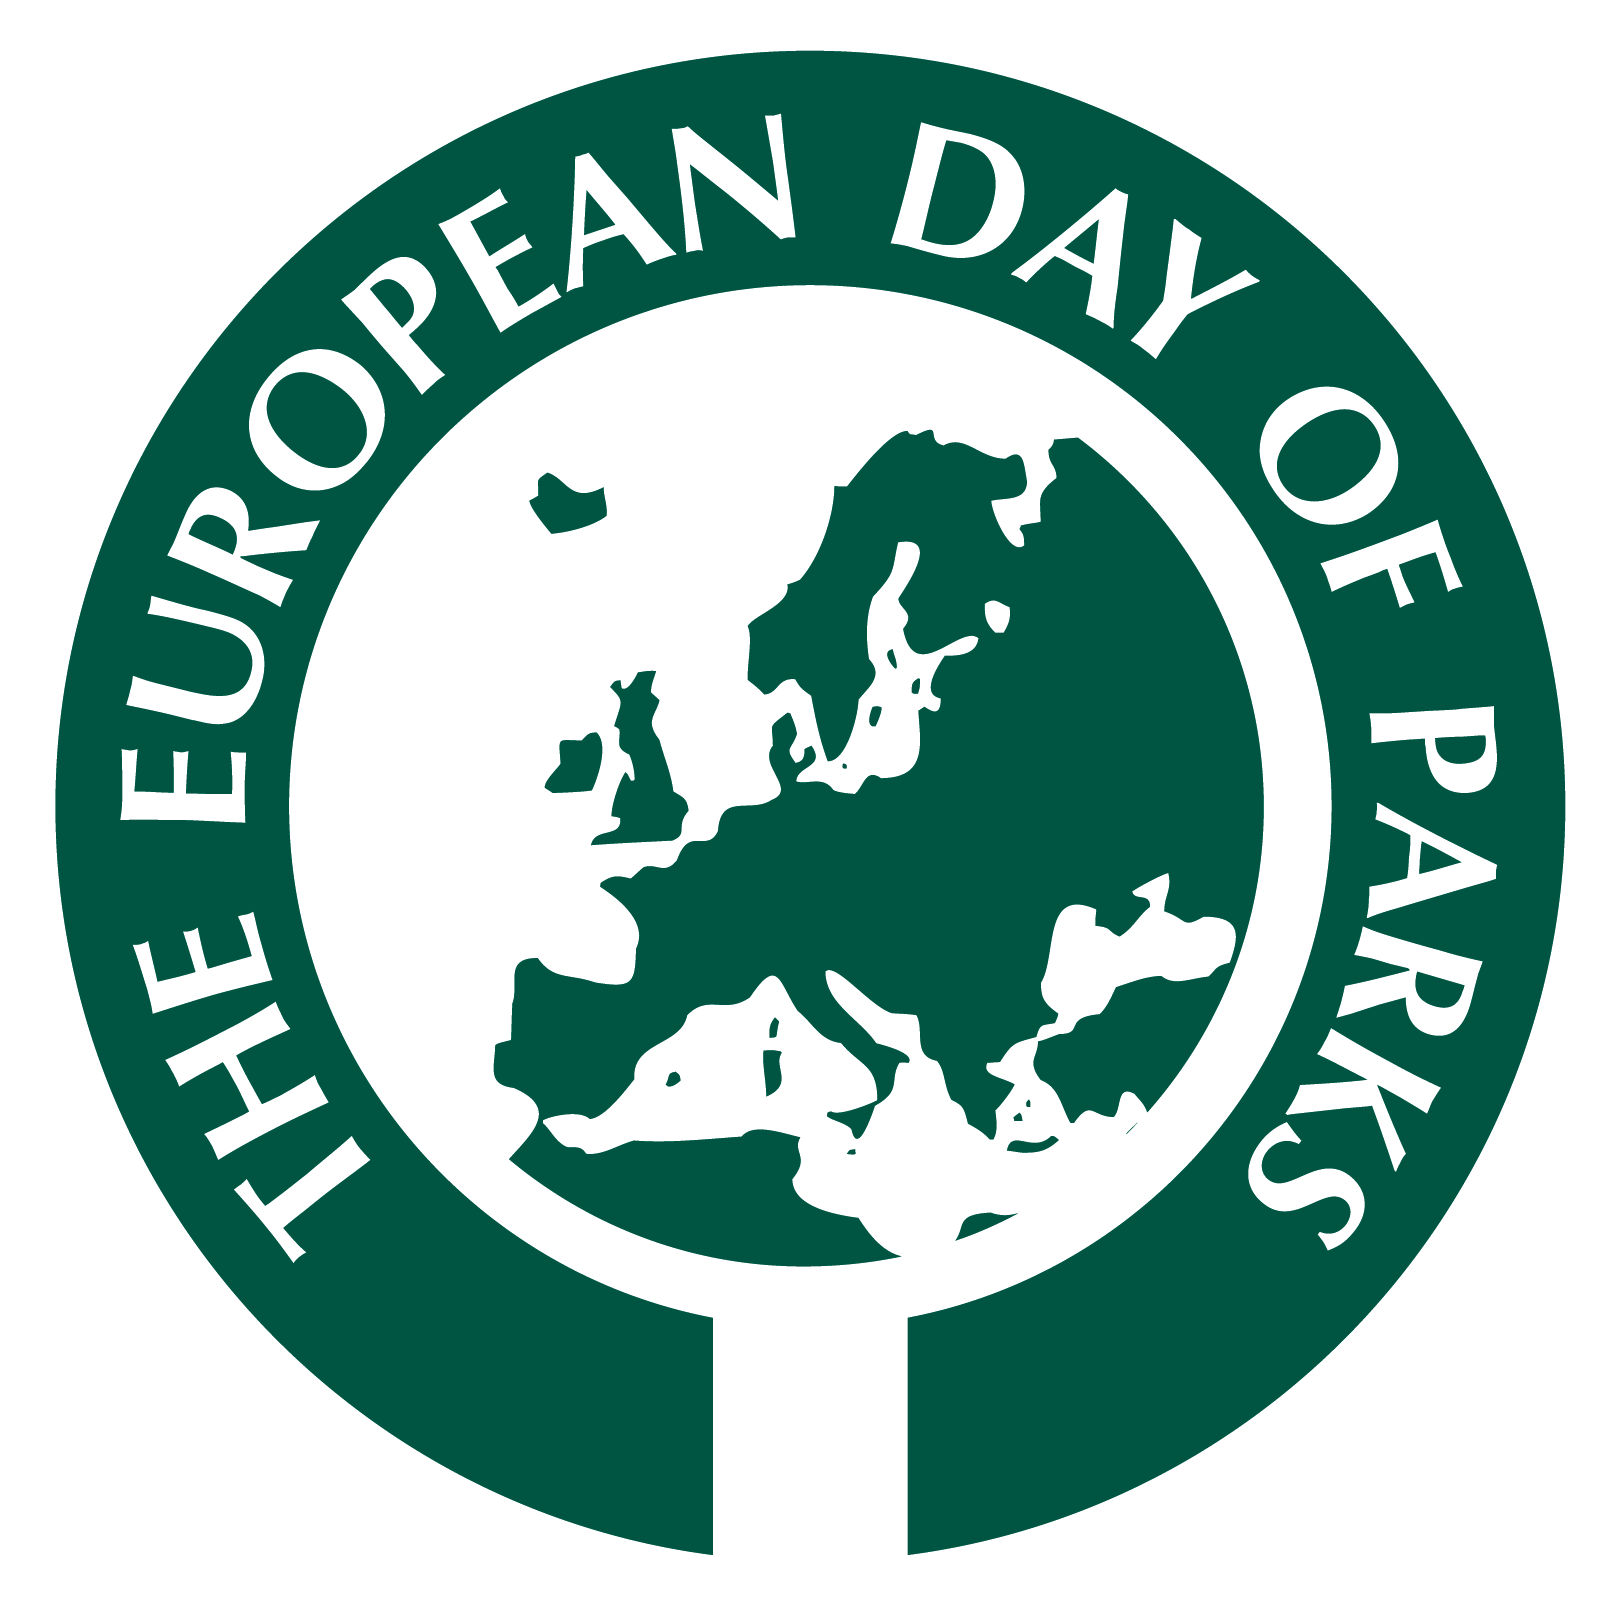 Giornata europea dei parchi, costruire sulle nostre radici